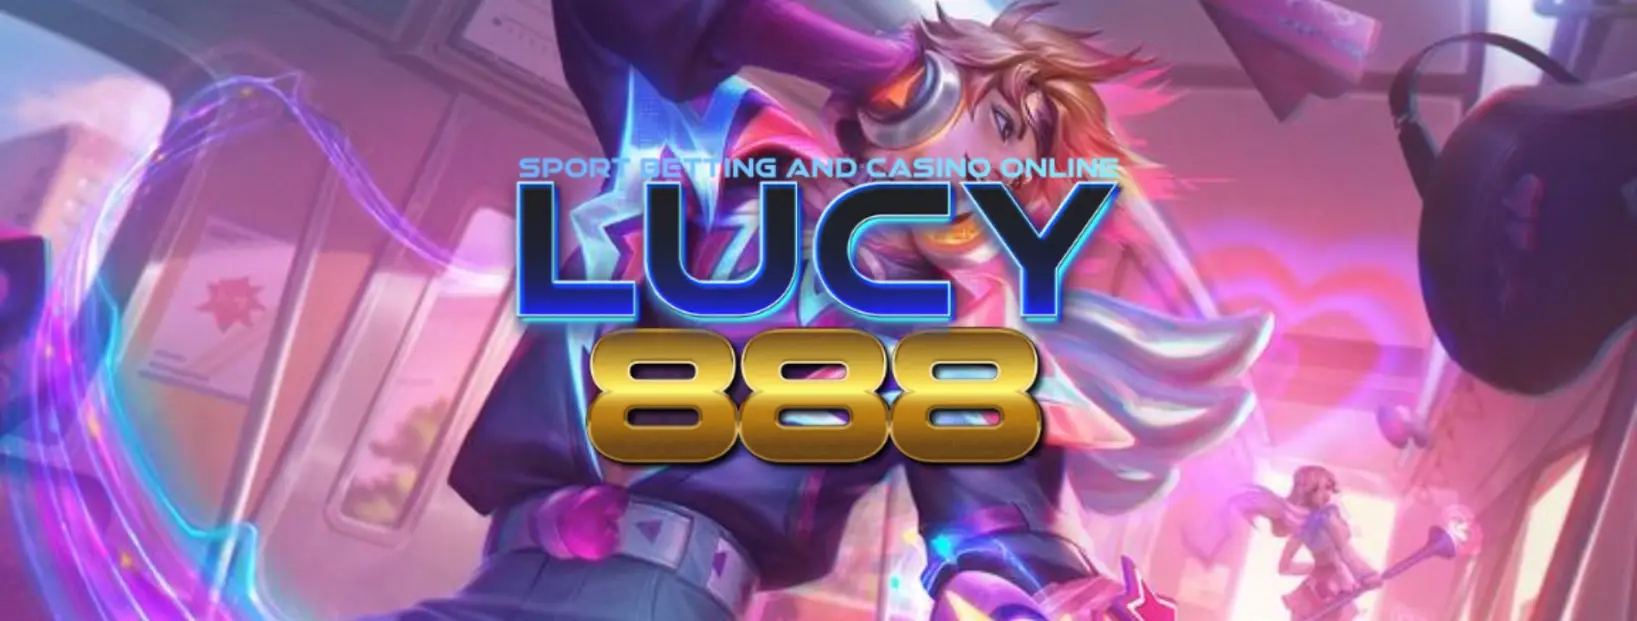 เข้าร่วมสนุกกับเกมสล็อตออนไลน์ที่ดีที่สุดที่ tee888.lucy888 ตอนนี้!